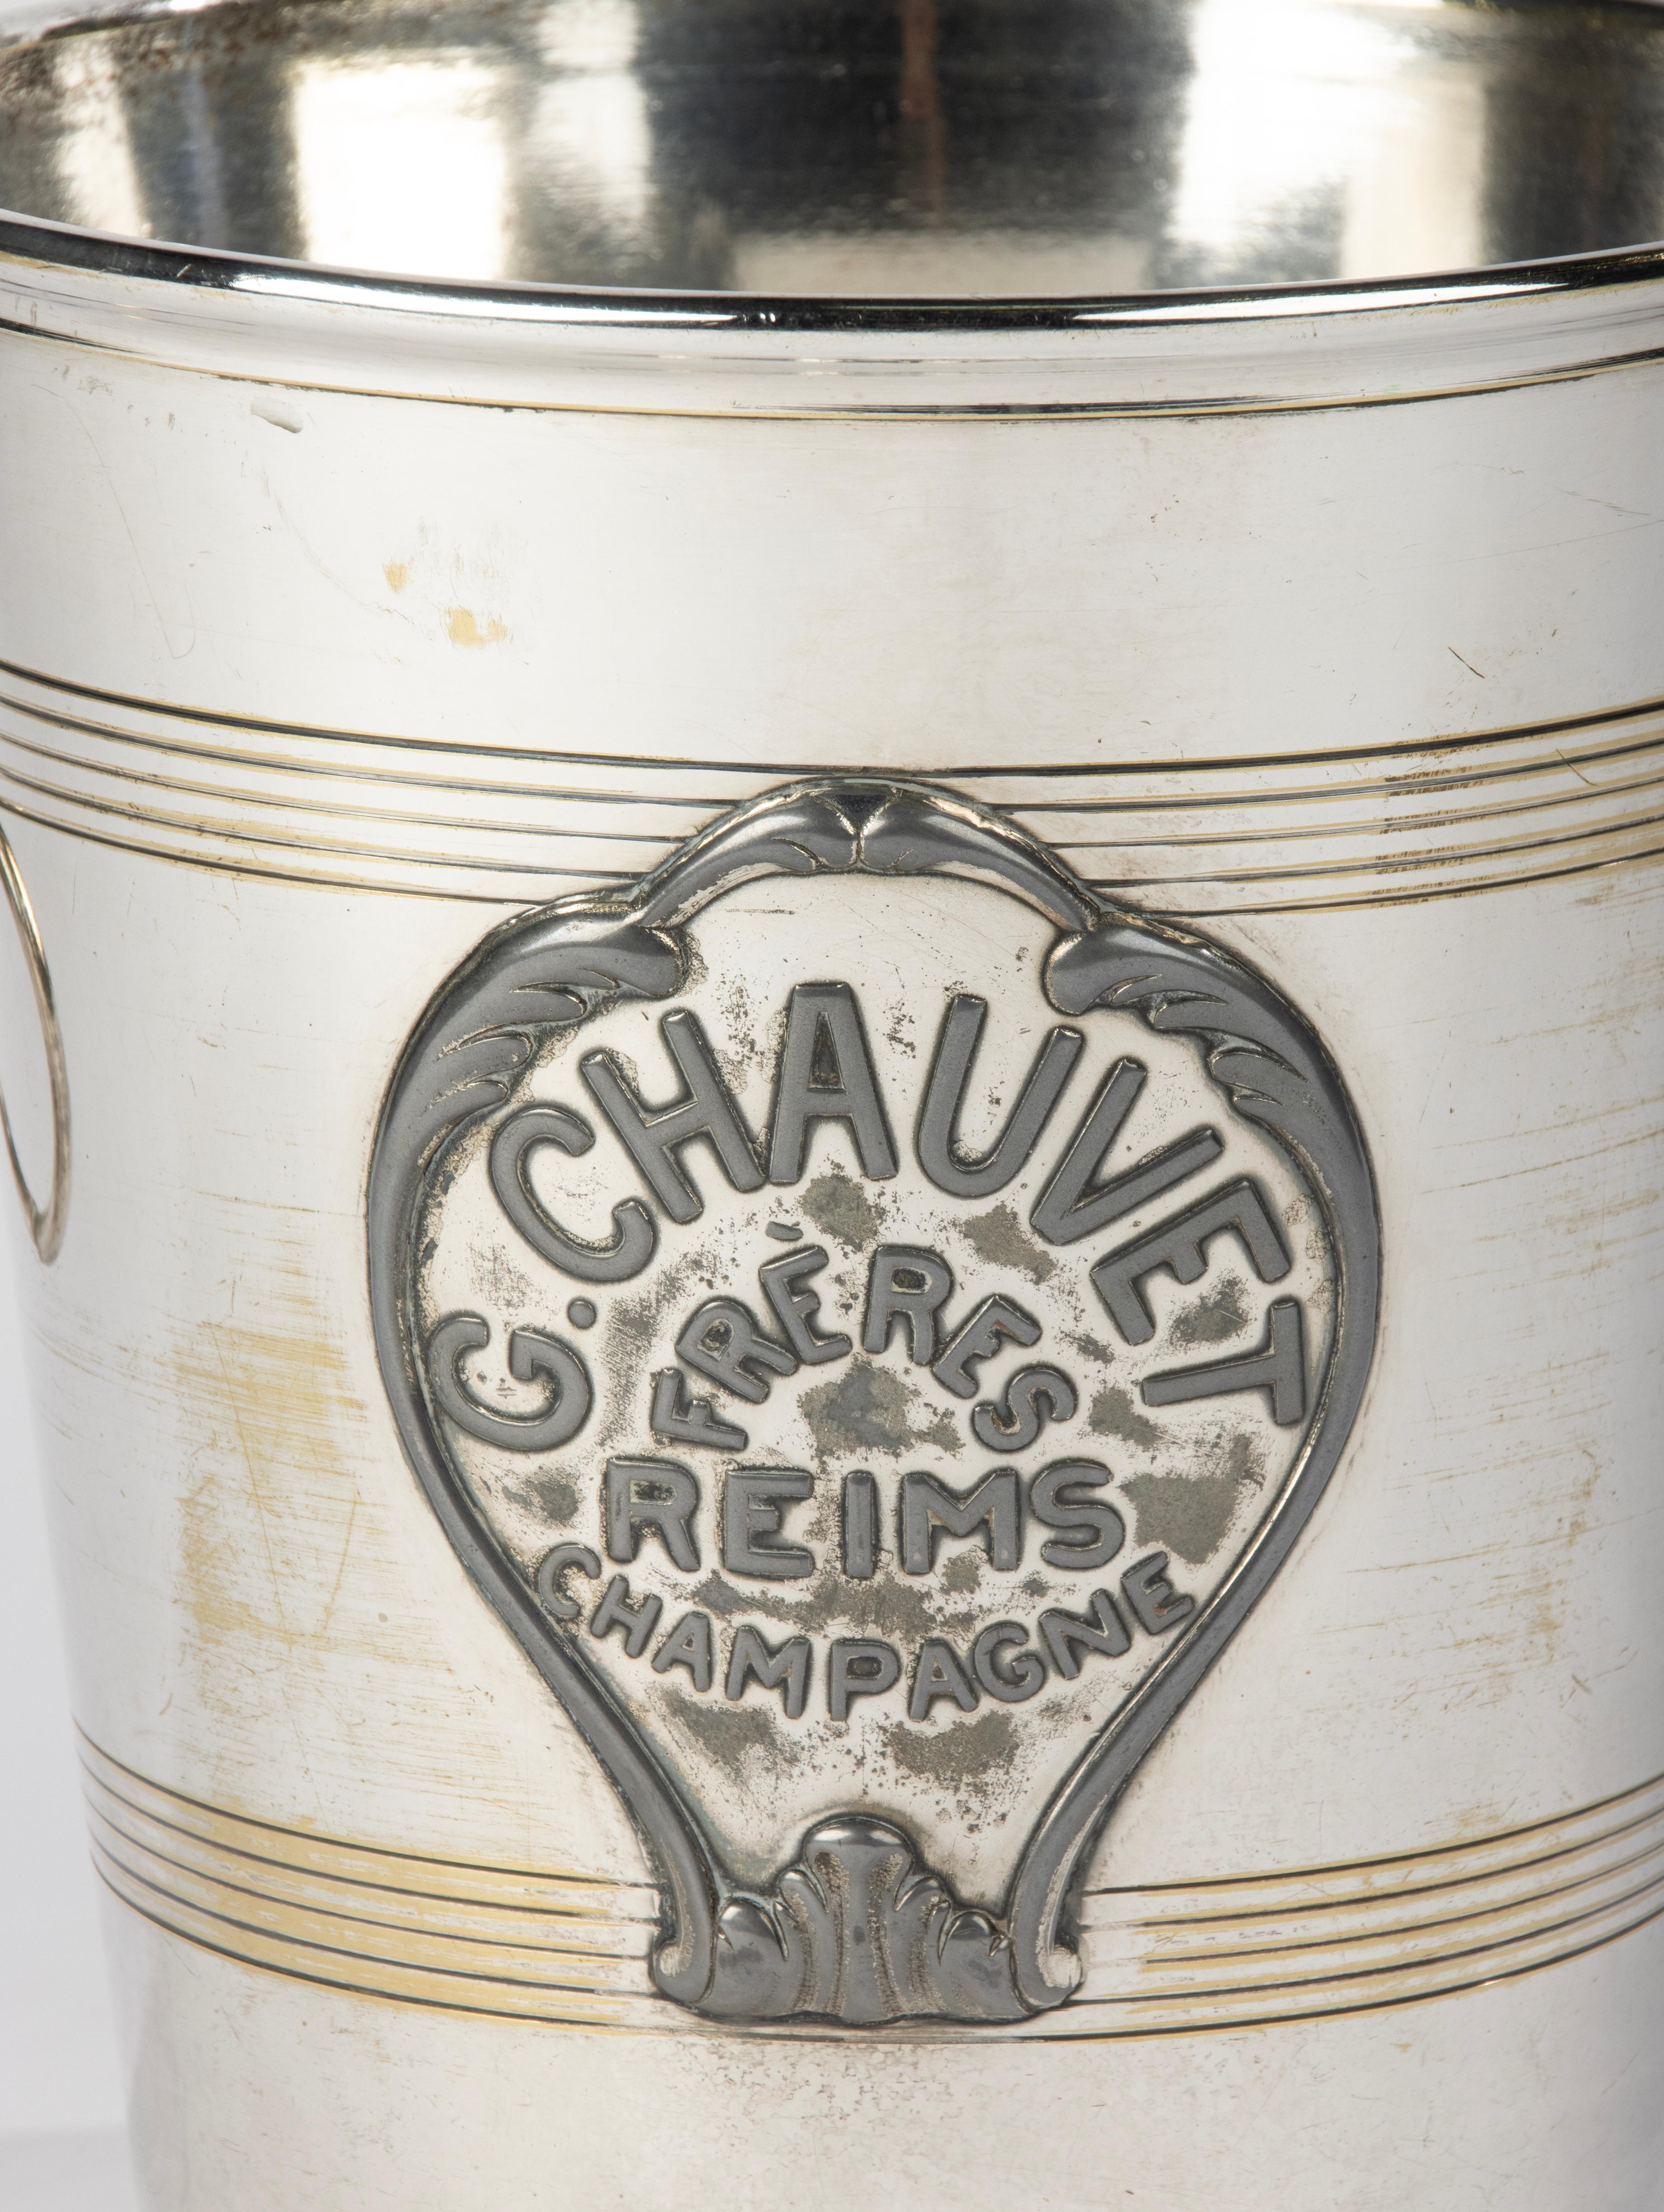 Antique Silver-Plated Champagne Cooler - Agit Paris for Maison G. Chauvet Reims For Sale 5